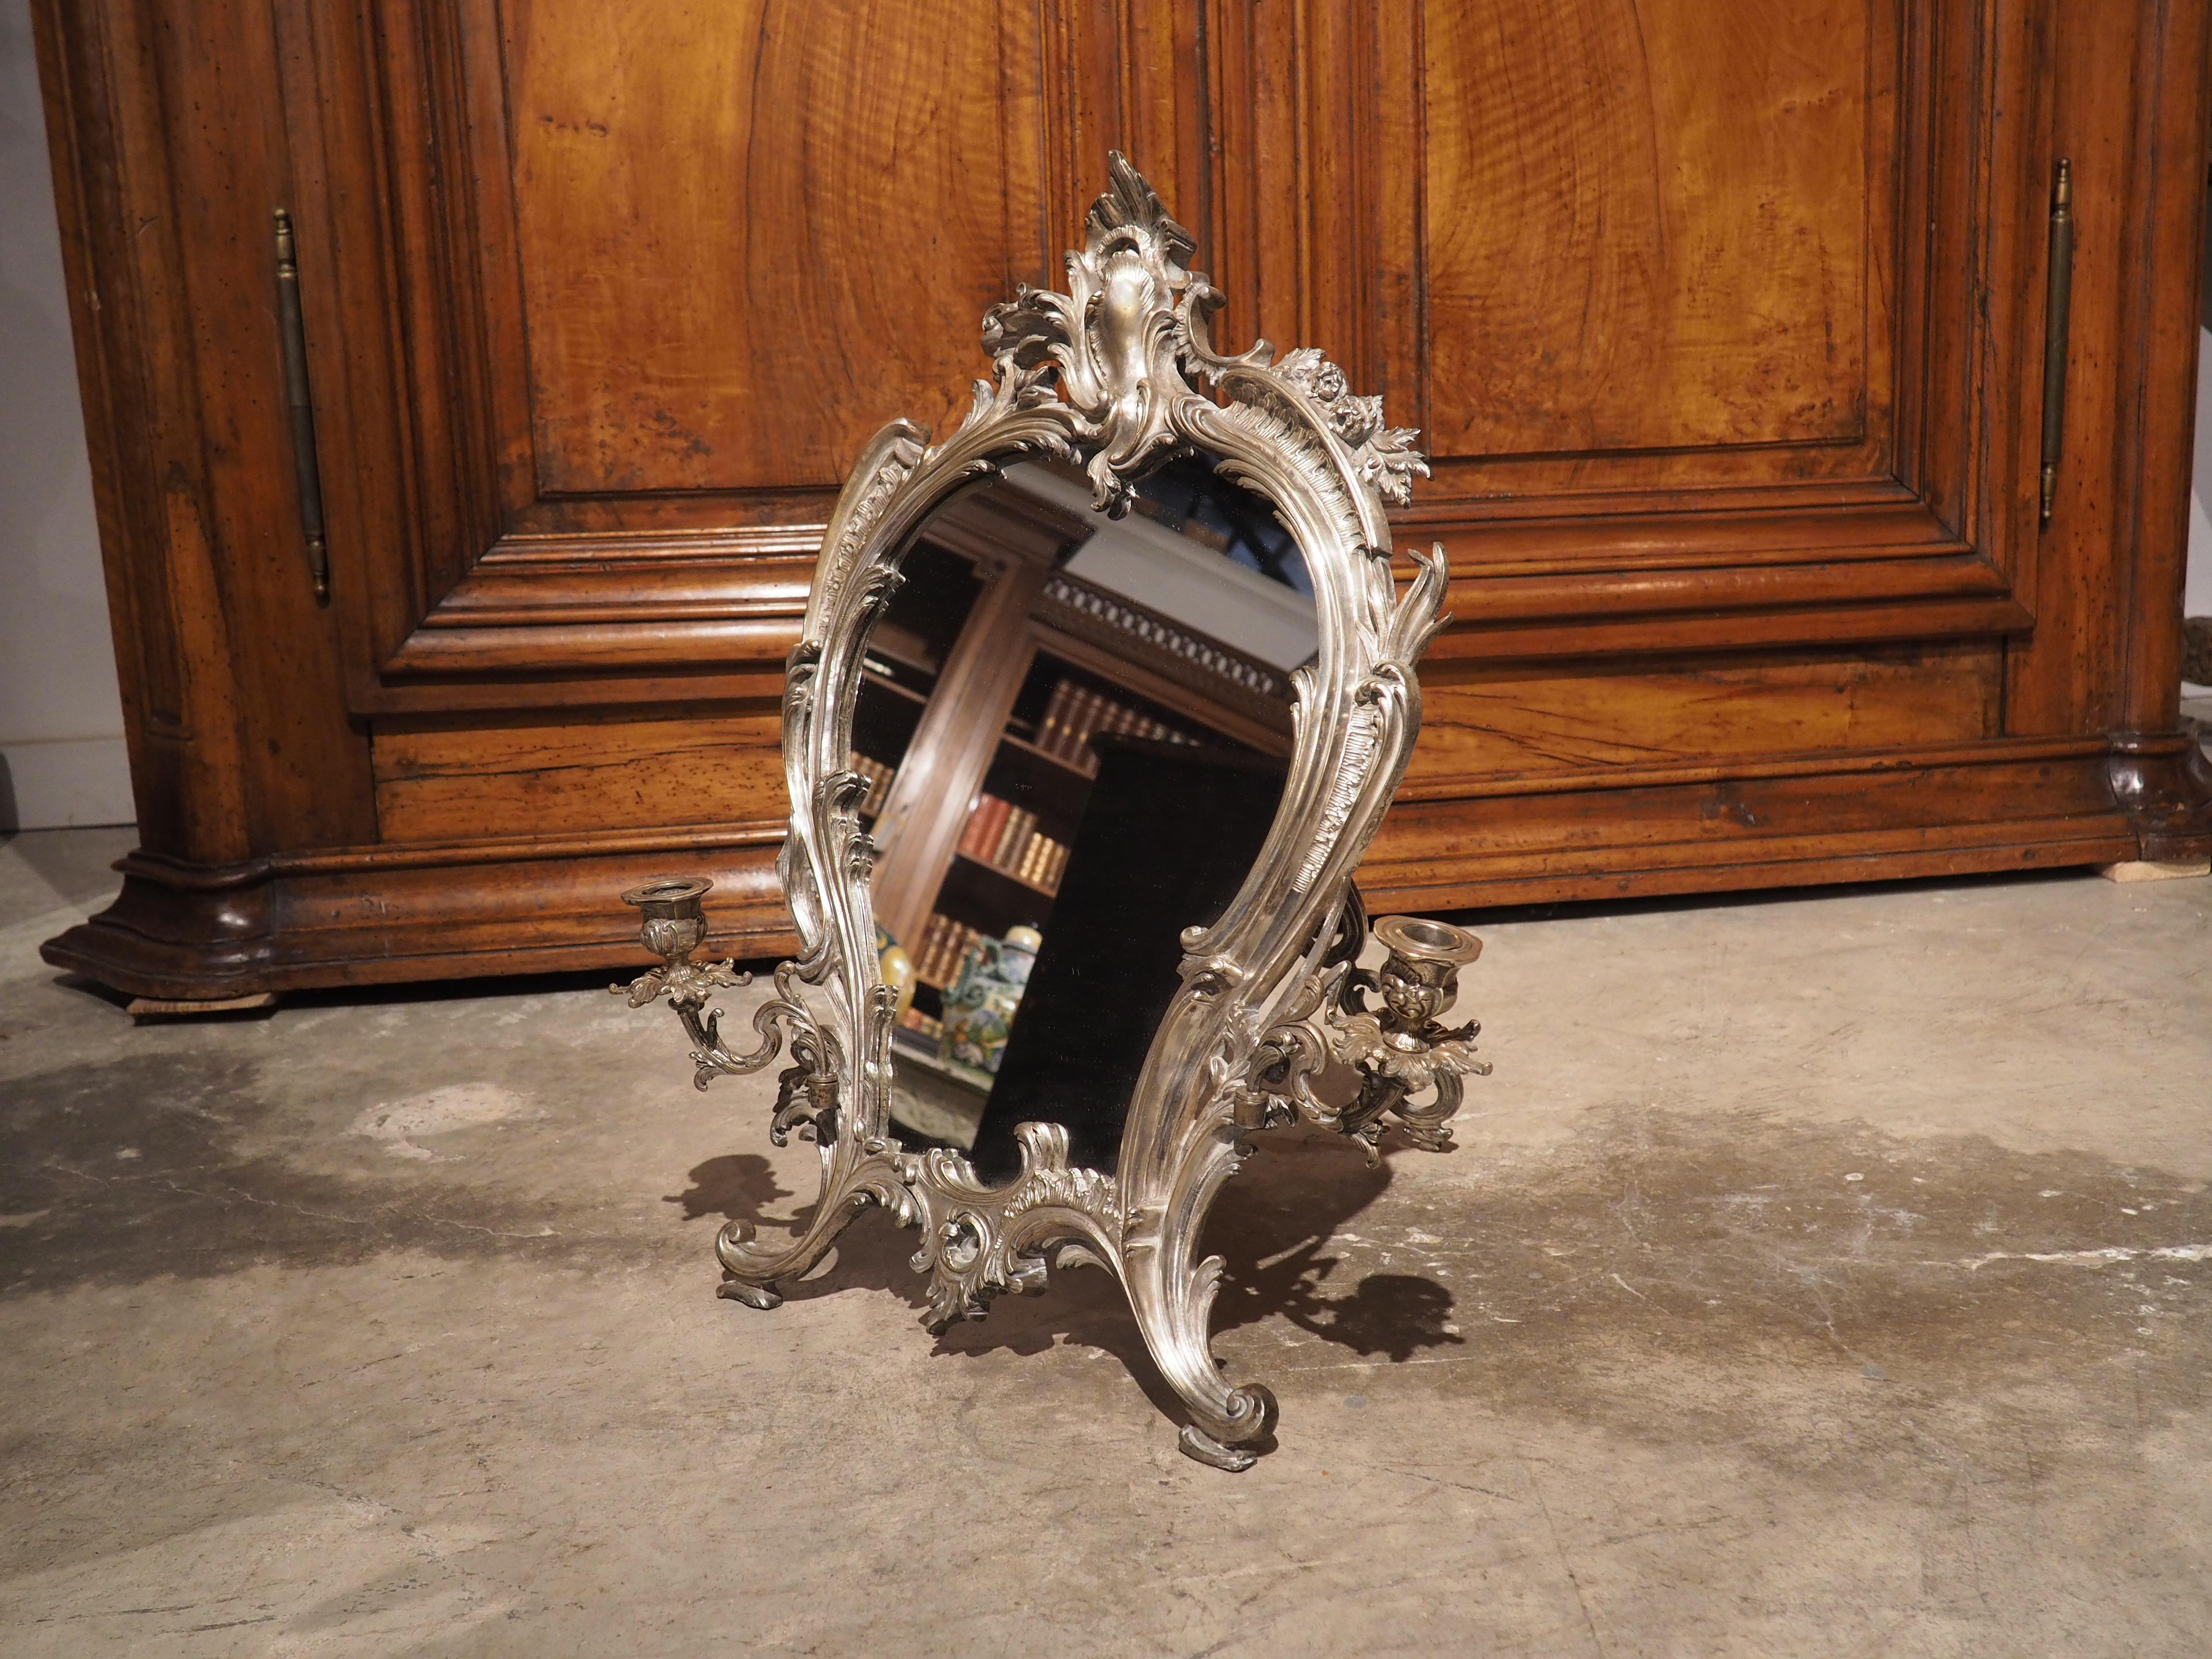 Production unique de la période Napoléon III, ce miroir de table en bronze argenté présente deux chandeliers feuillus réglables qui s'insèrent dans des goujons fixés près de la base d'un cadre de style rococo. Composé de feuilles, de fleurs et de